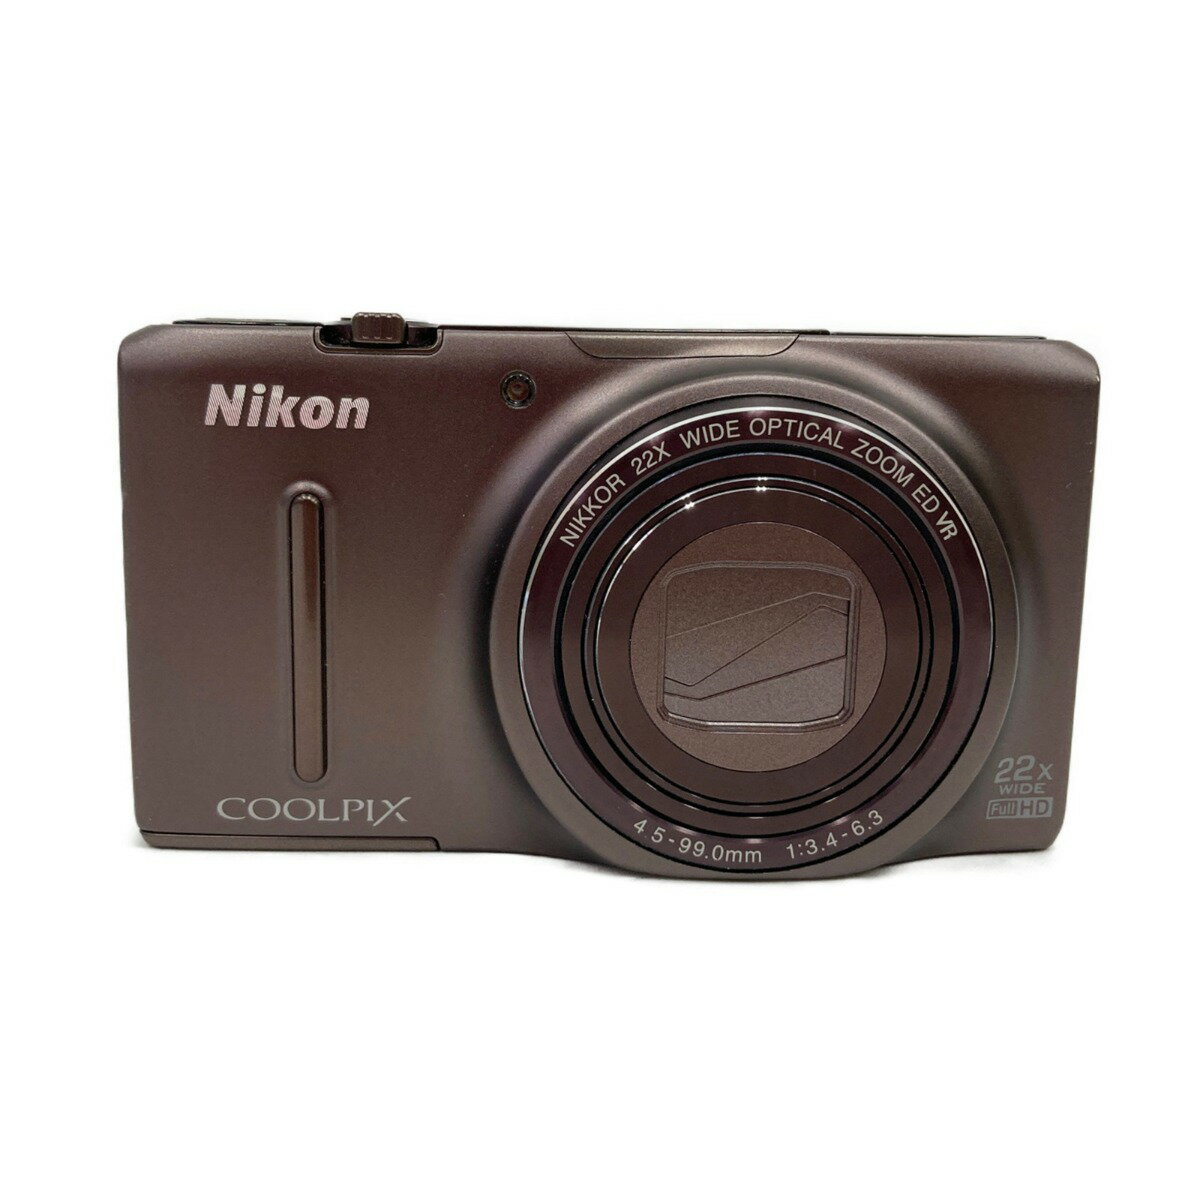 〇〇【中古】Nikon ニコン コンパクトデジタルカメラ COOLPIX S9500 Cランク